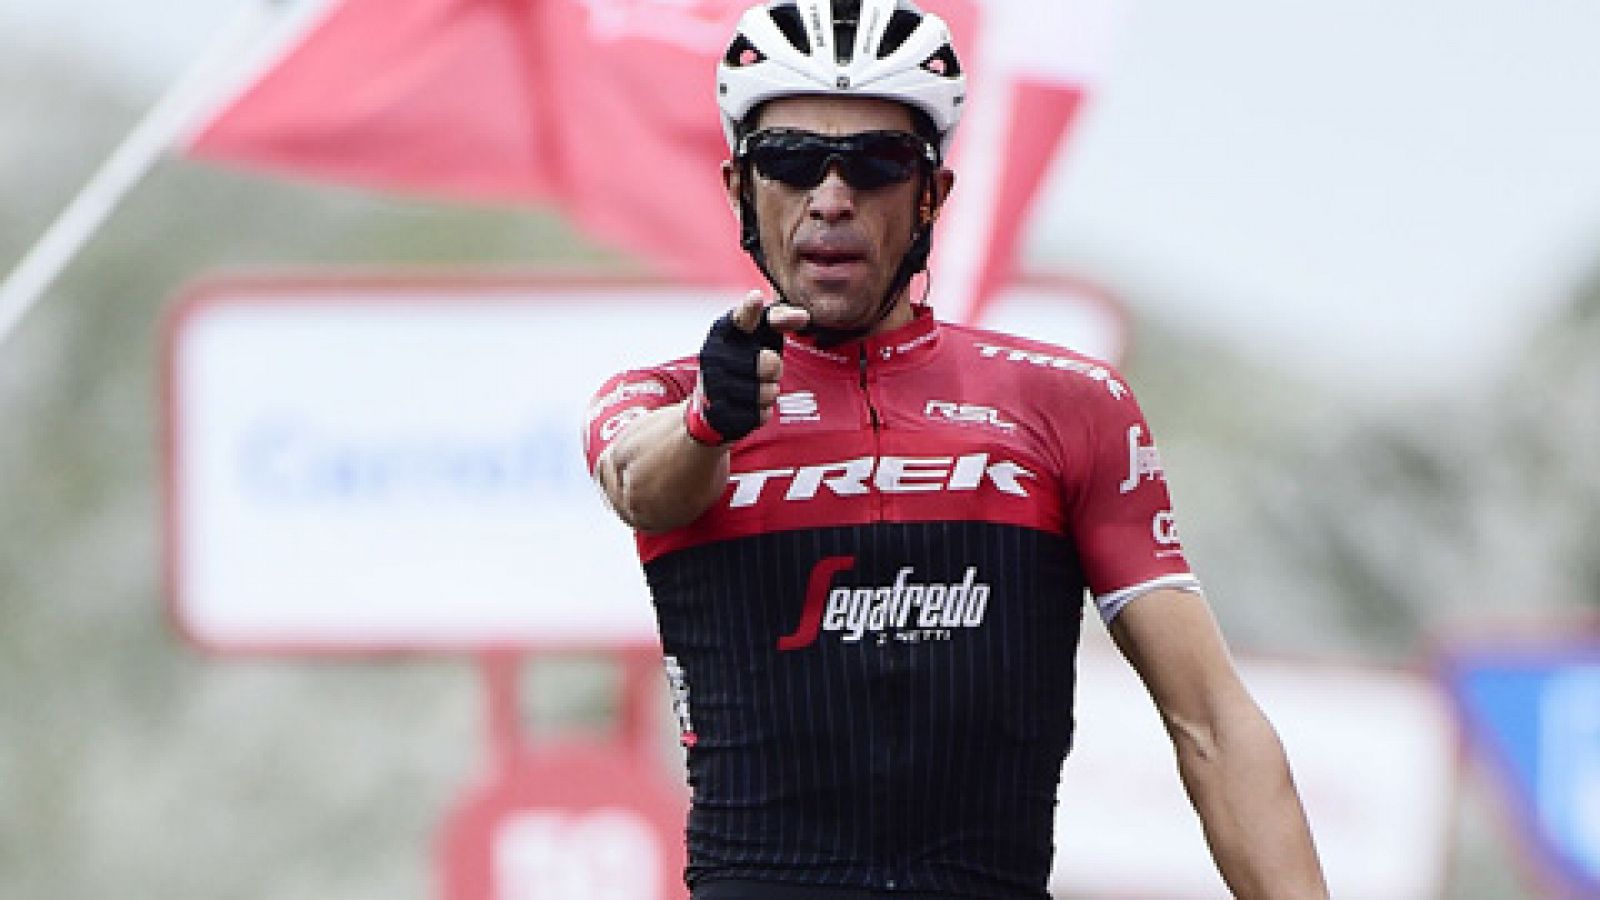 Alberto Contador volvió a ganar en el Angliru en la que ha sido su última gran etapa como profesional, mientras que Froome certificó su triunfo en la general.